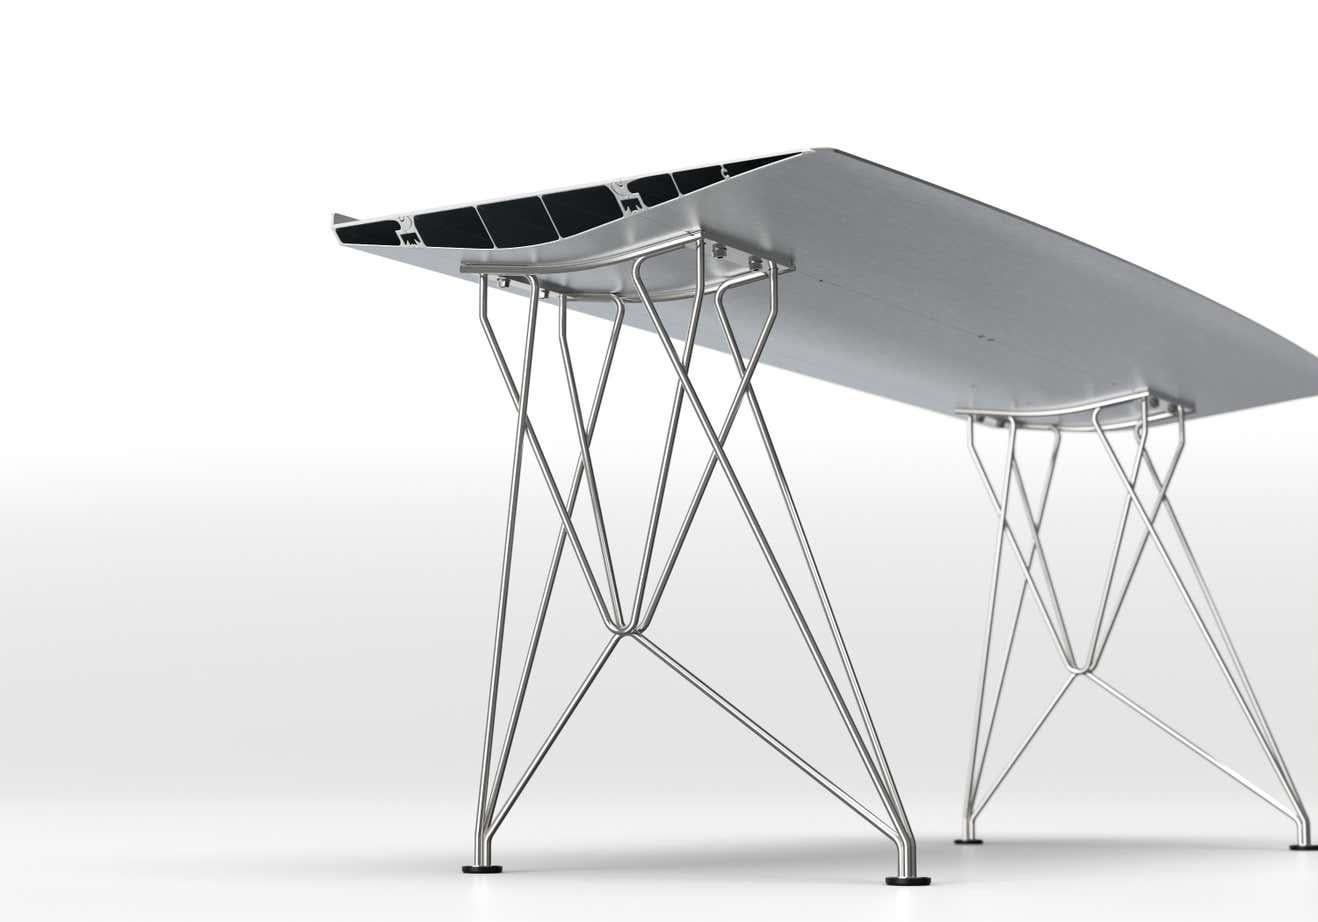 21stCentury Table B Desk Konstantin Grcic Top Anodized Silver with Inox Legs

Matériaux : 
Aluminium, acier inoxydable

Dimensions : 
D&H 70 cm x L 180 cm x H 74 cm

La Table B, qui a inauguré la Collection Extrusions en 2009, peut atteindre jusqu'à